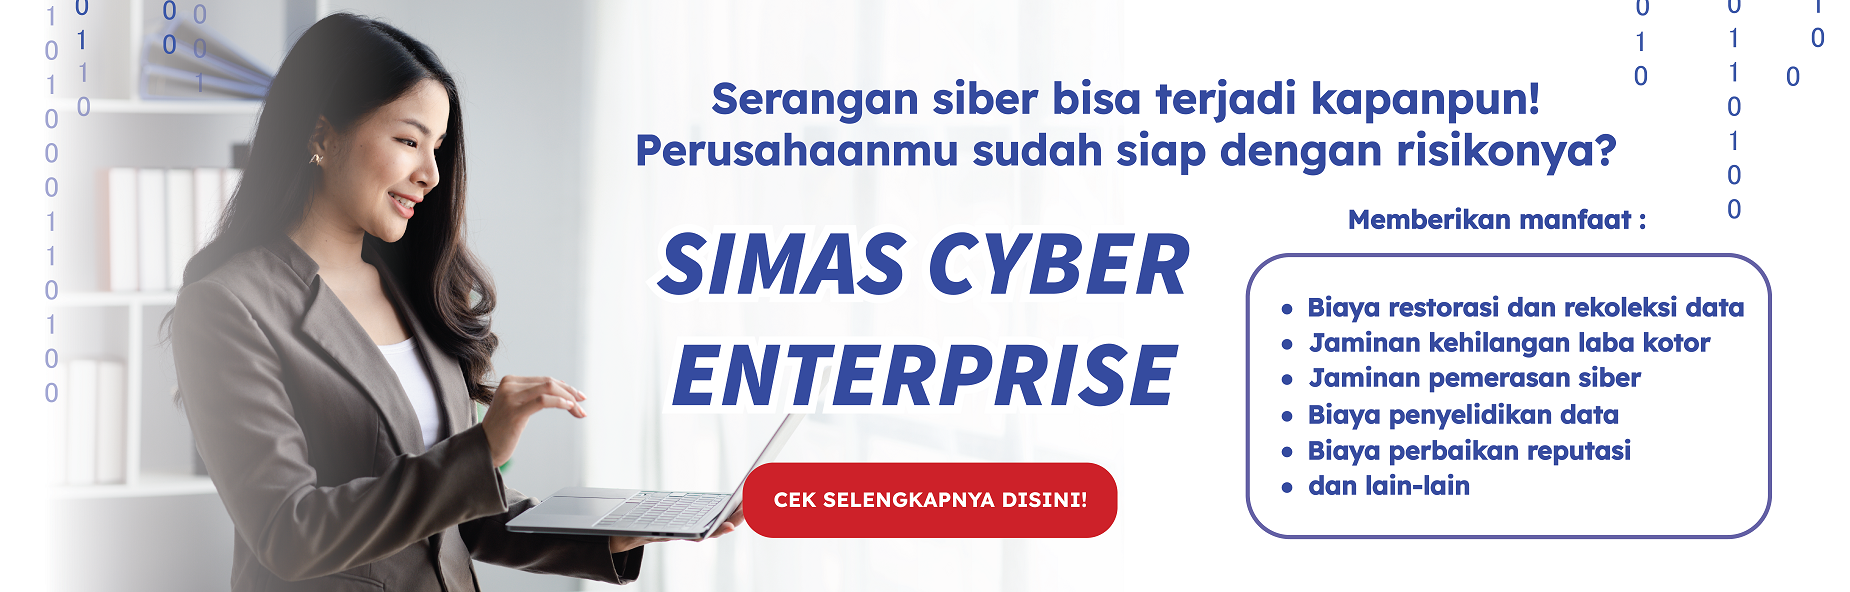 Banner Promo Simas Cyber Enterprise - Desktop